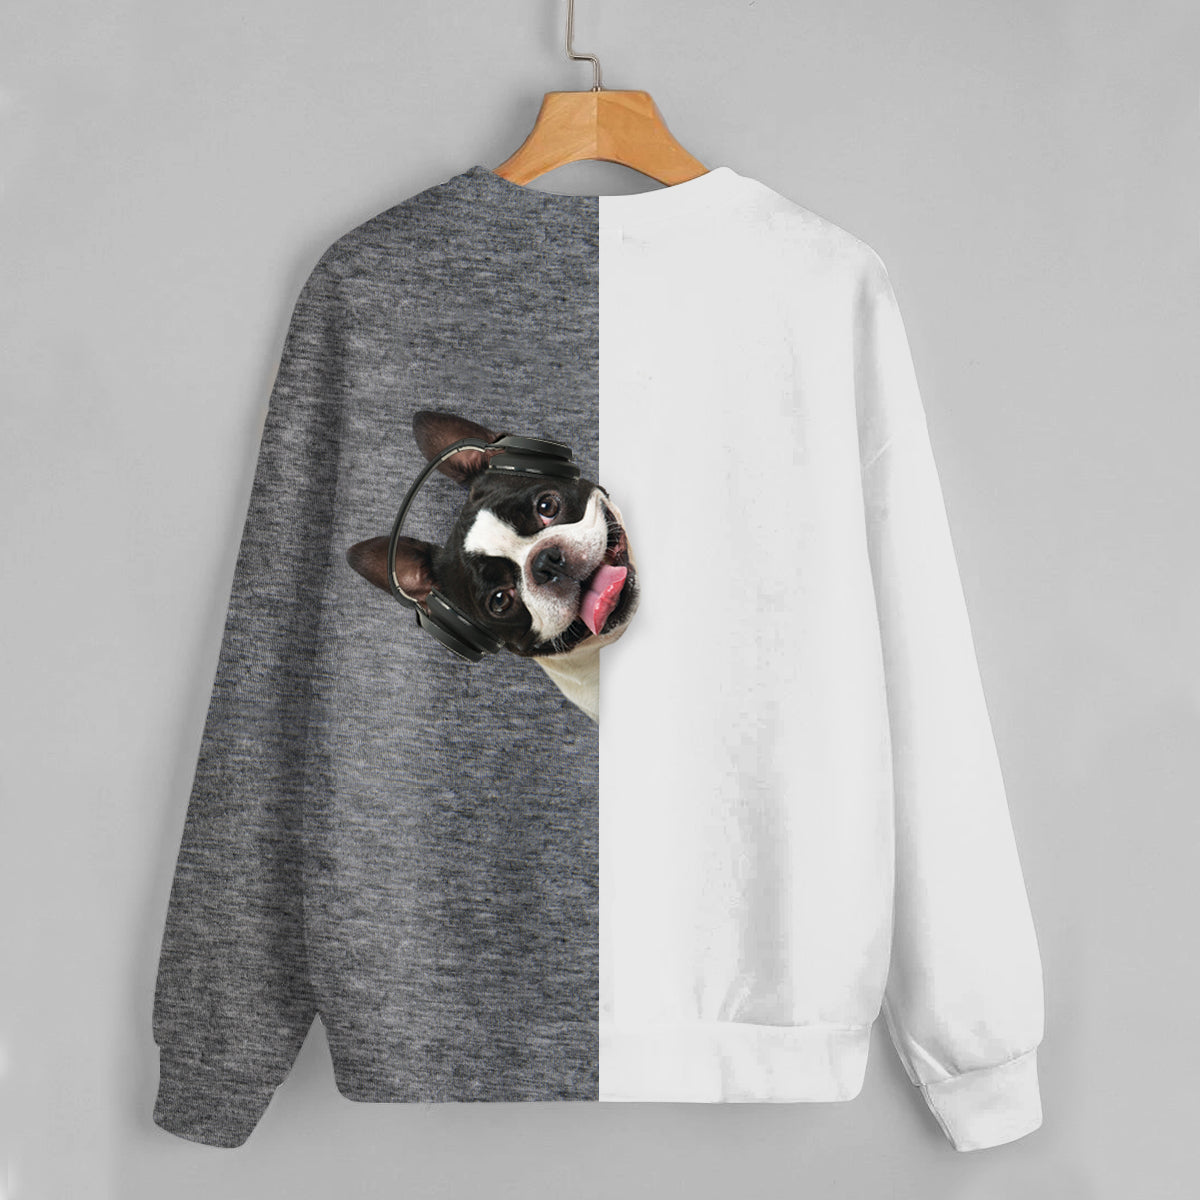 Lustige glückliche Zeit - Boston Terrier Sweatshirt V2